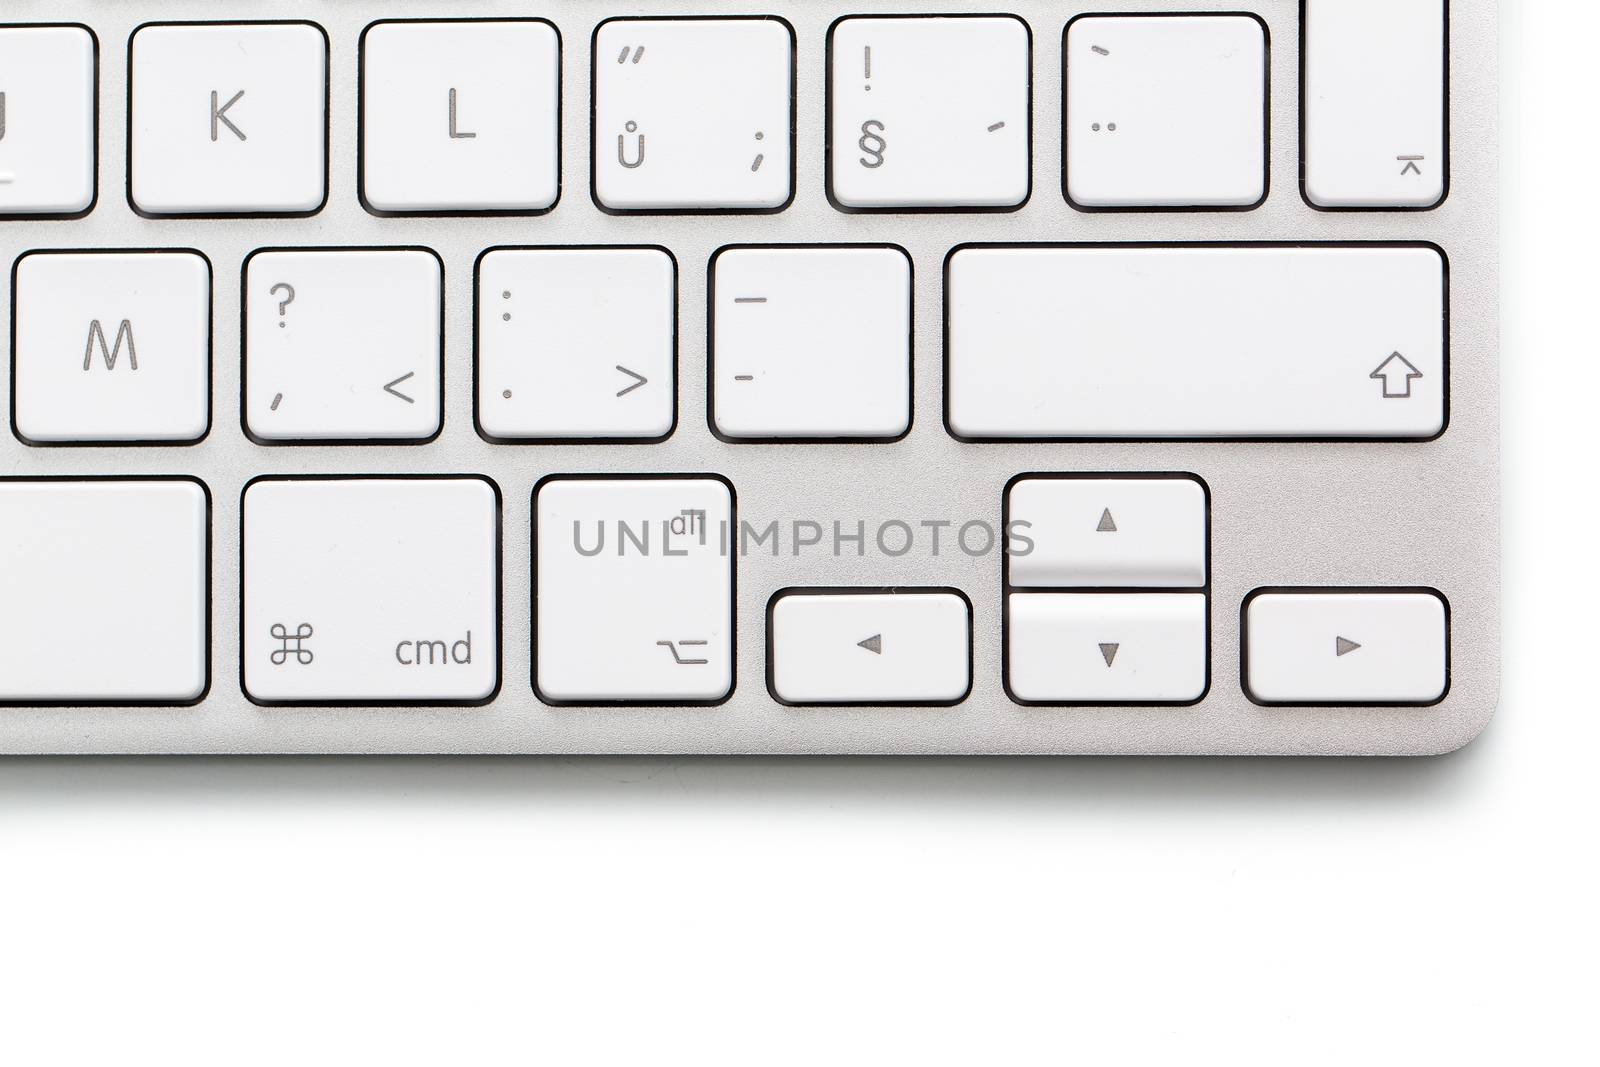 Modern keybord on white